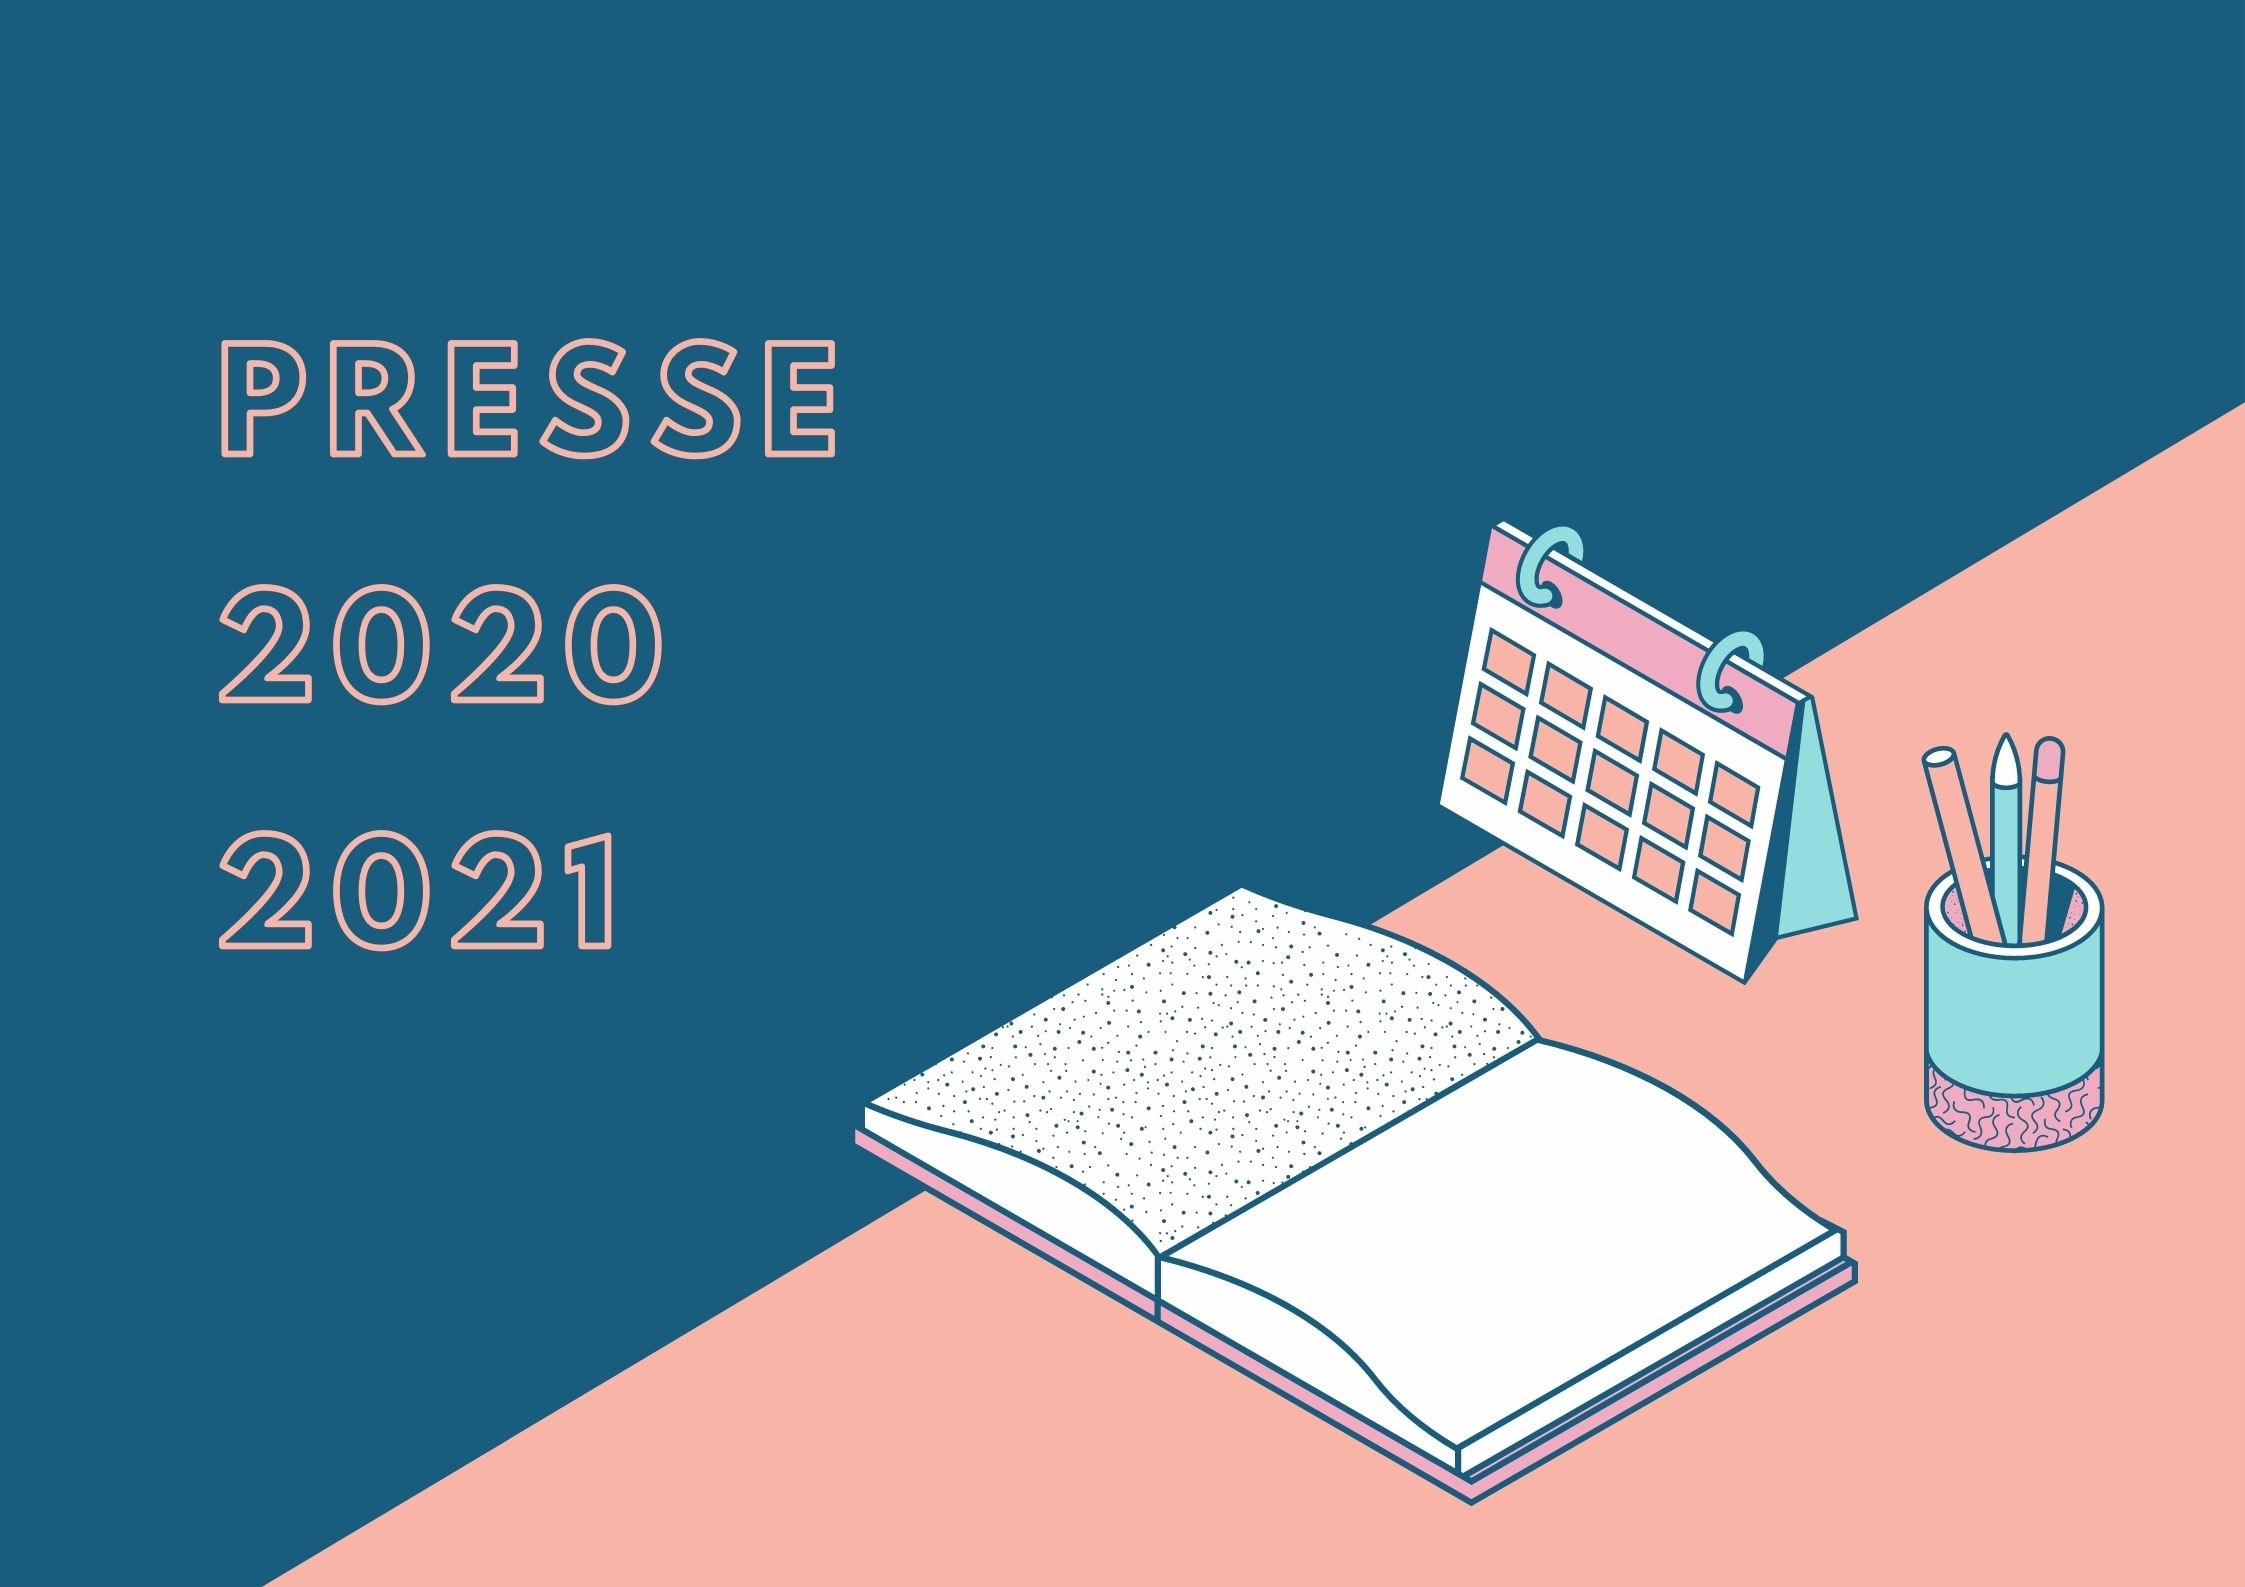 Lire la suite à propos de l’article Presse 2020-2021